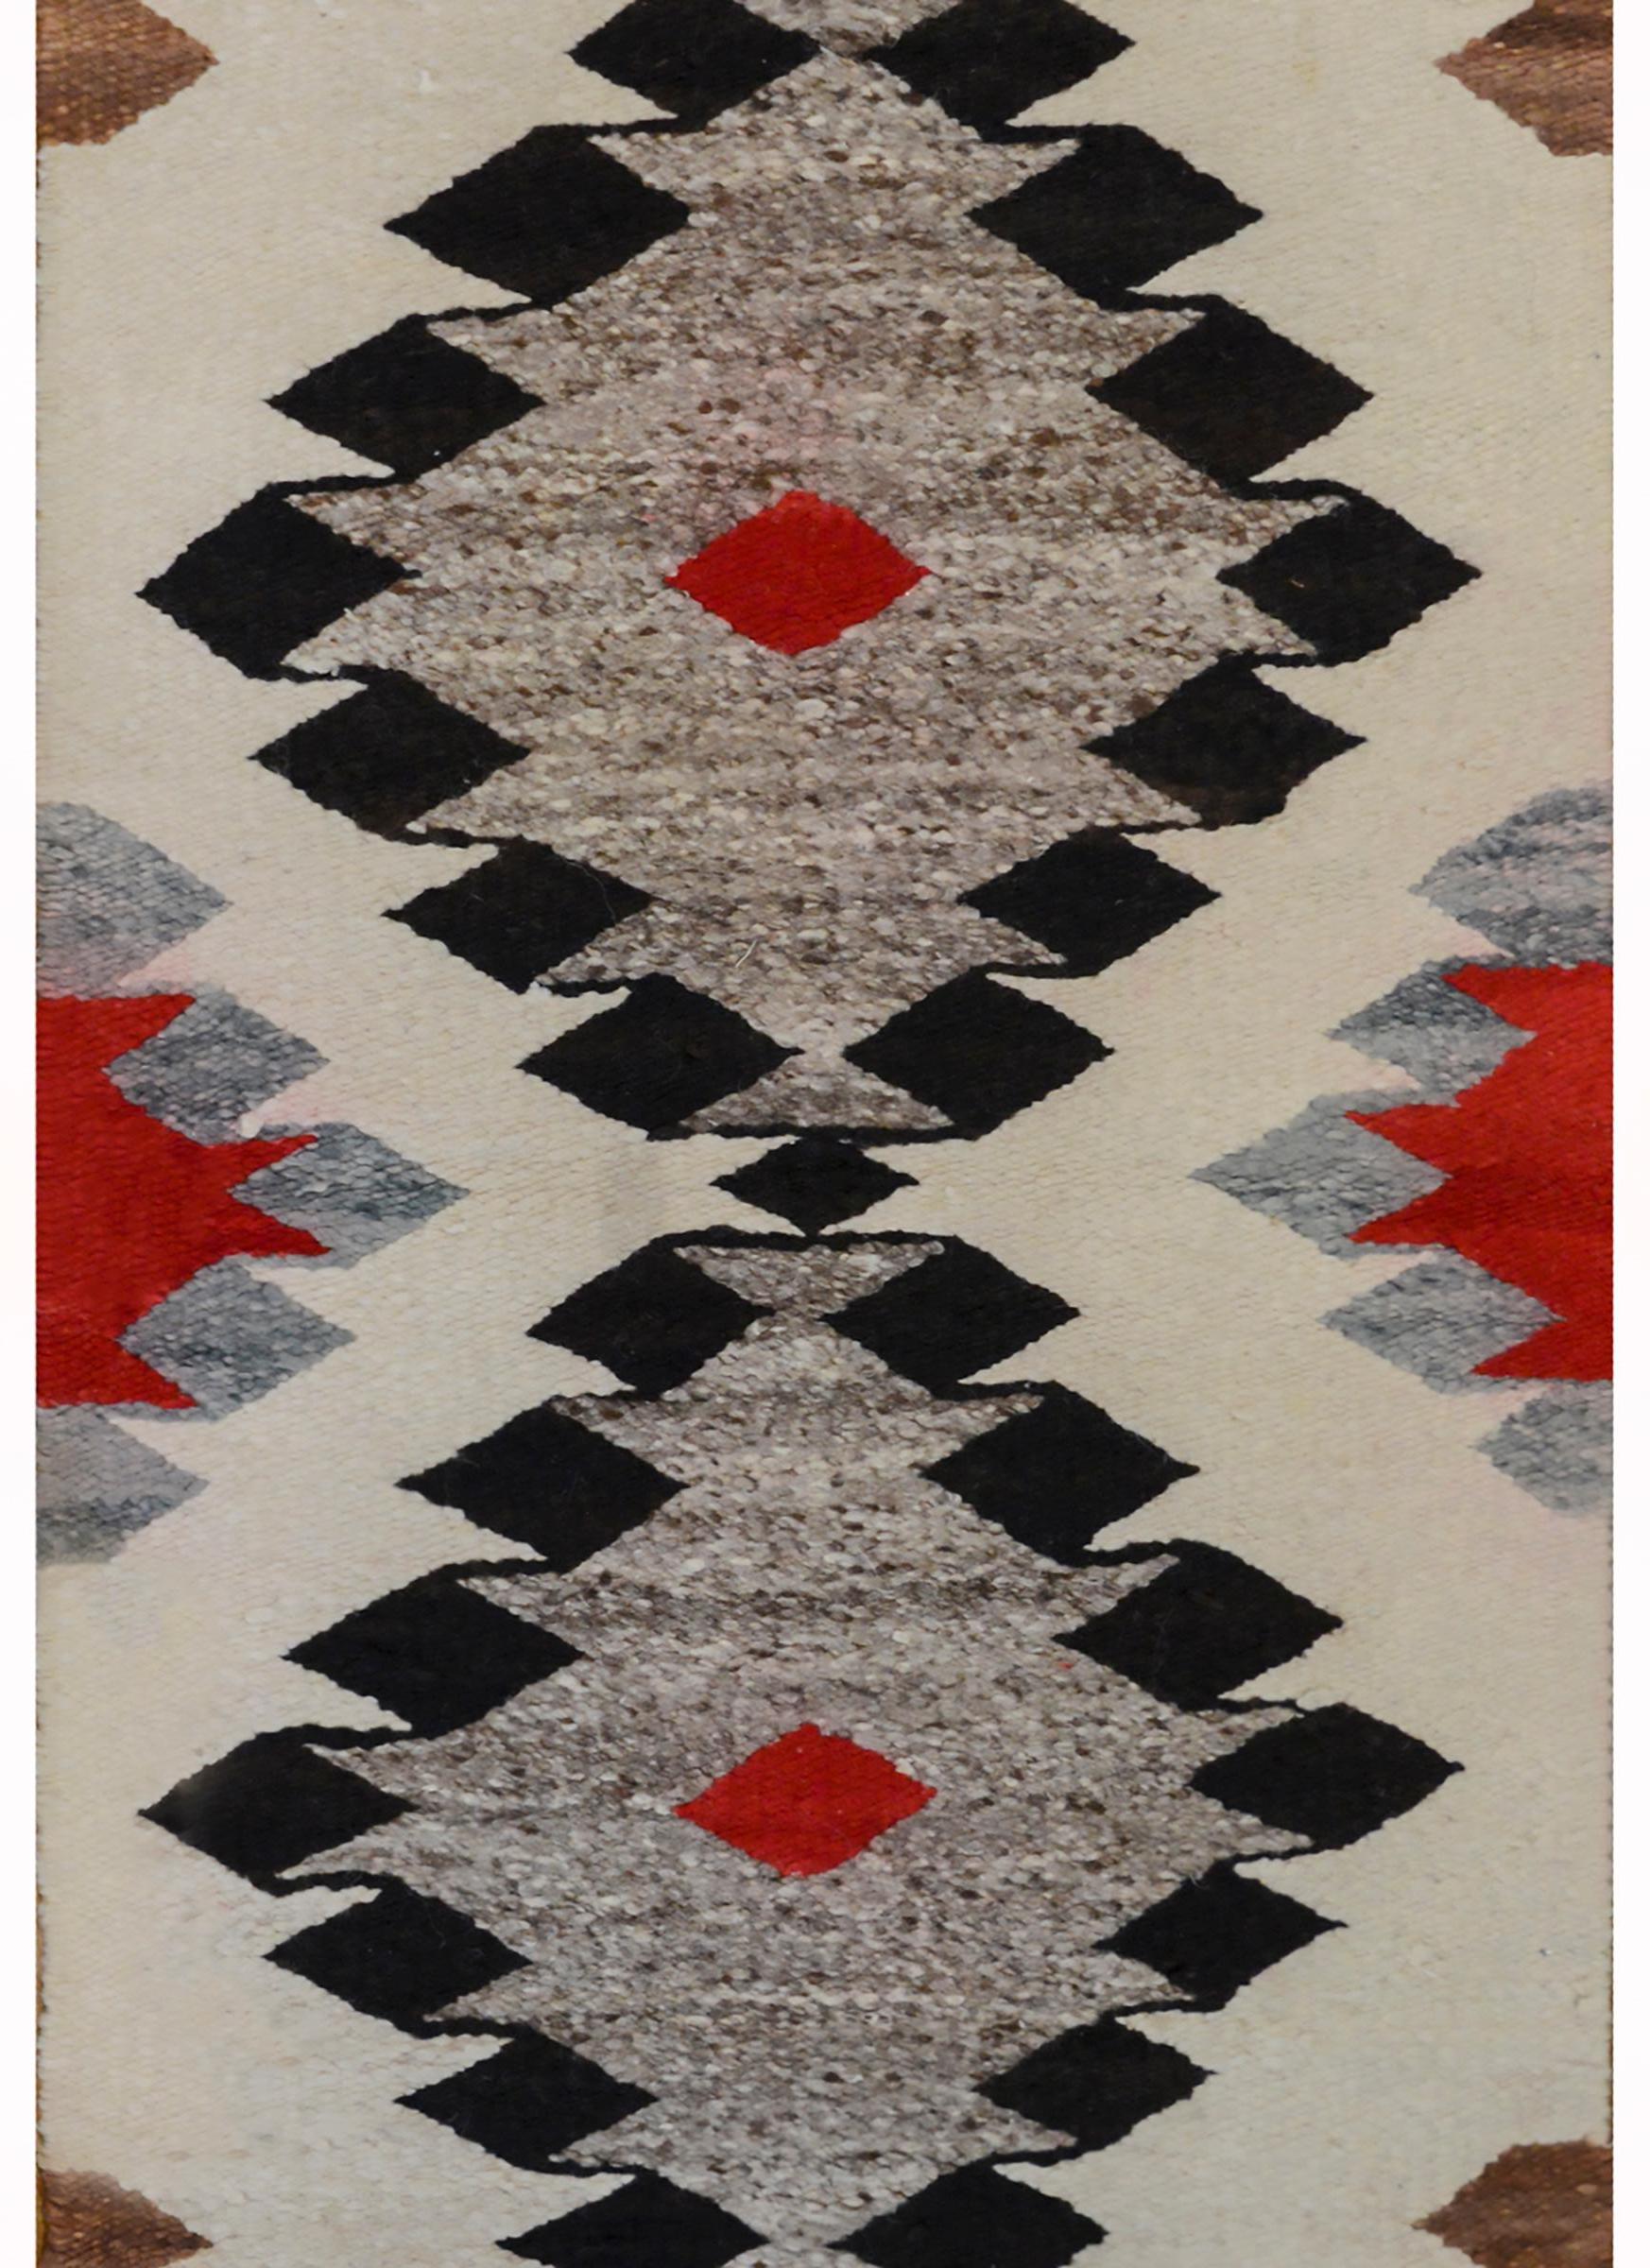 Ein kräftiger Navajo-Teppich aus der Mitte des 20. Jahrhunderts mit zwei großen schwarzen, grauen und purpurroten Rauten auf einem cremefarbenen Feld mit weiteren kleineren Rauten.